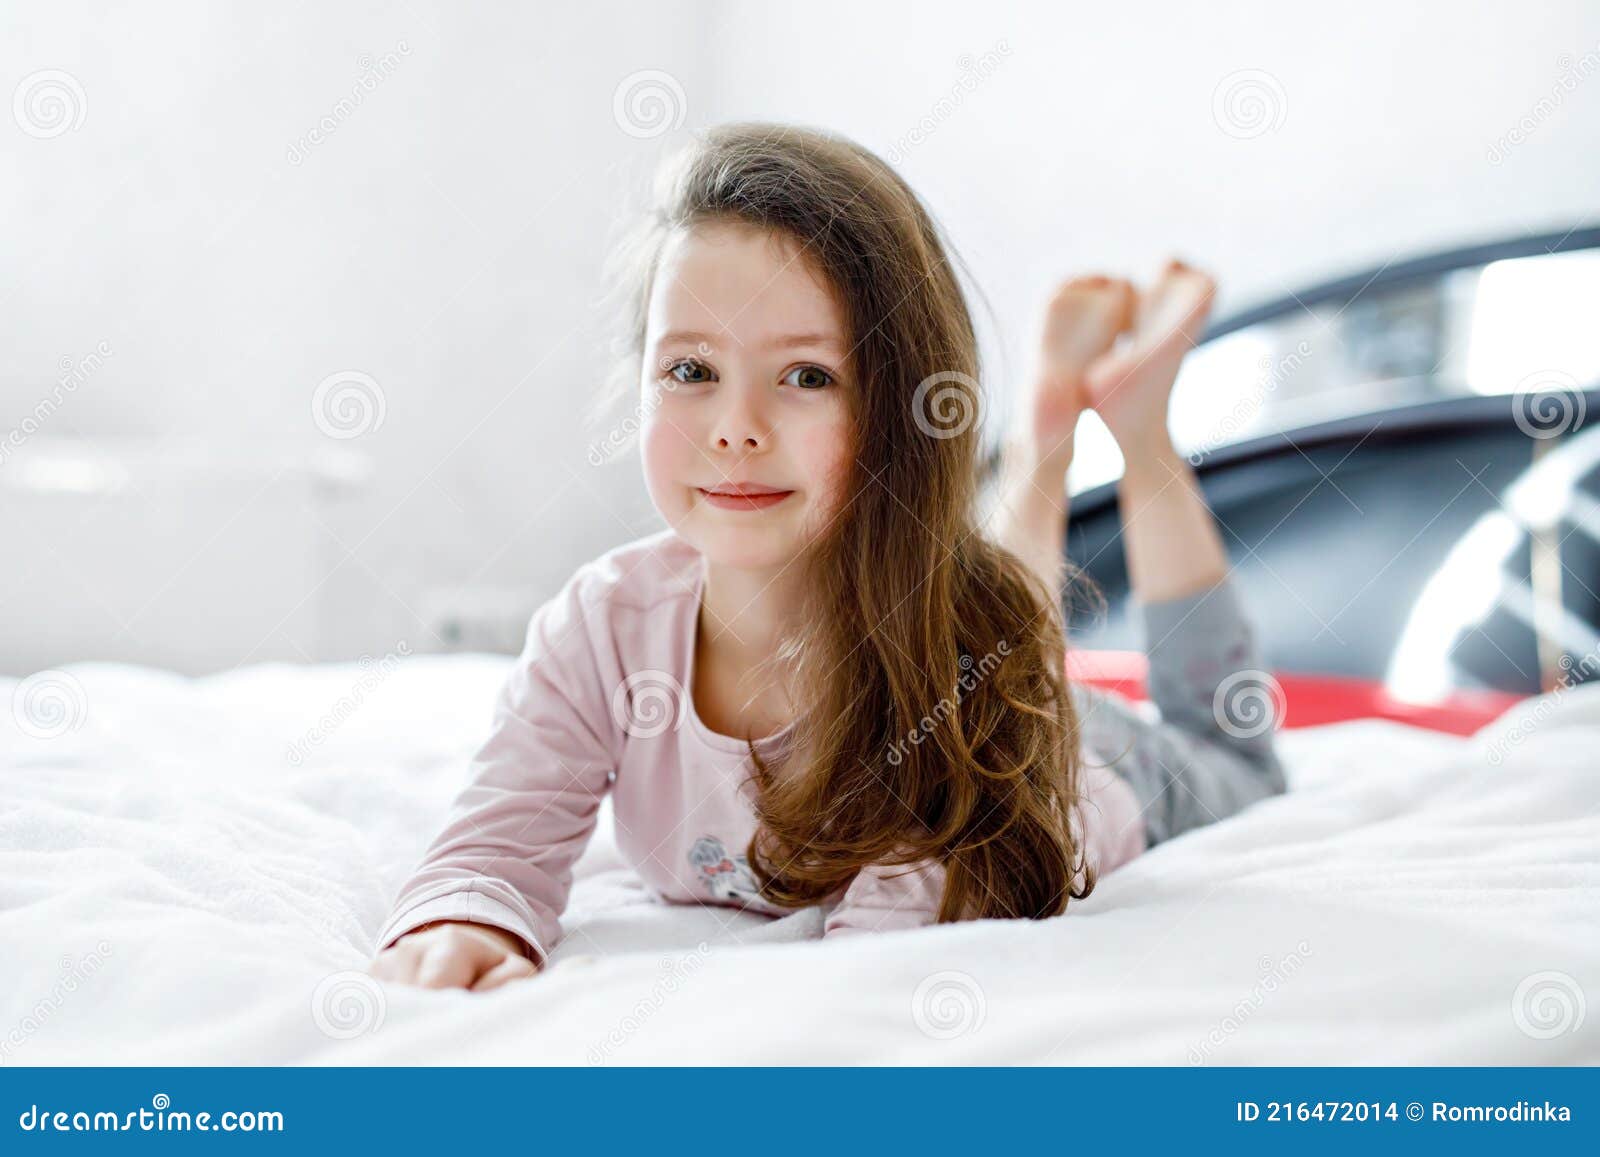 Очаровательная малышка на кровати